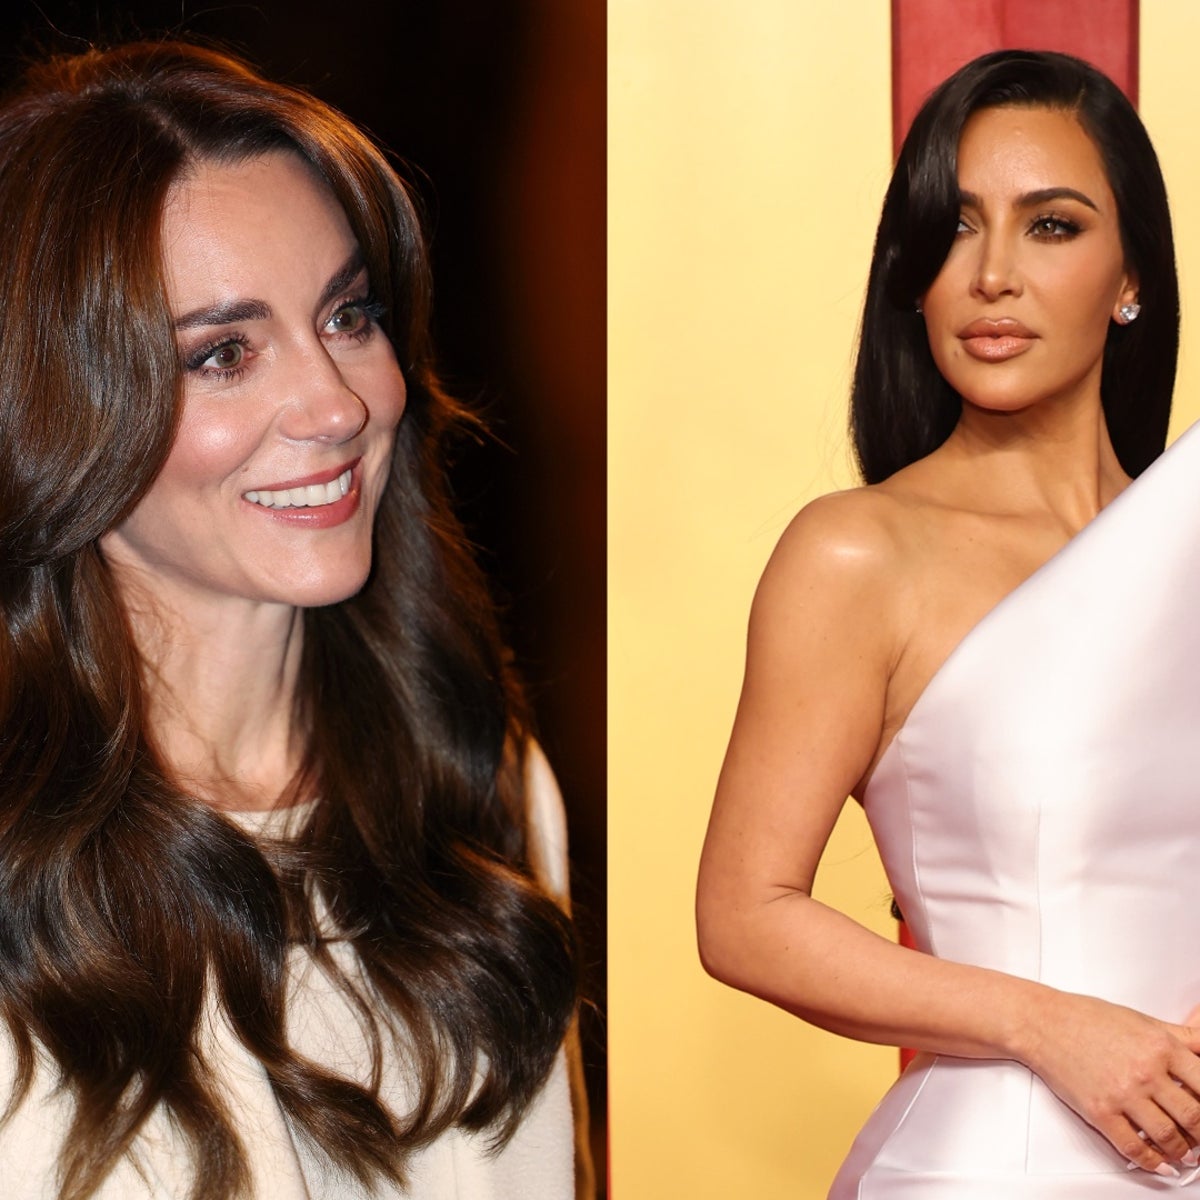 Kim Kardashian under pressure to apologise for Kate Middleton joke